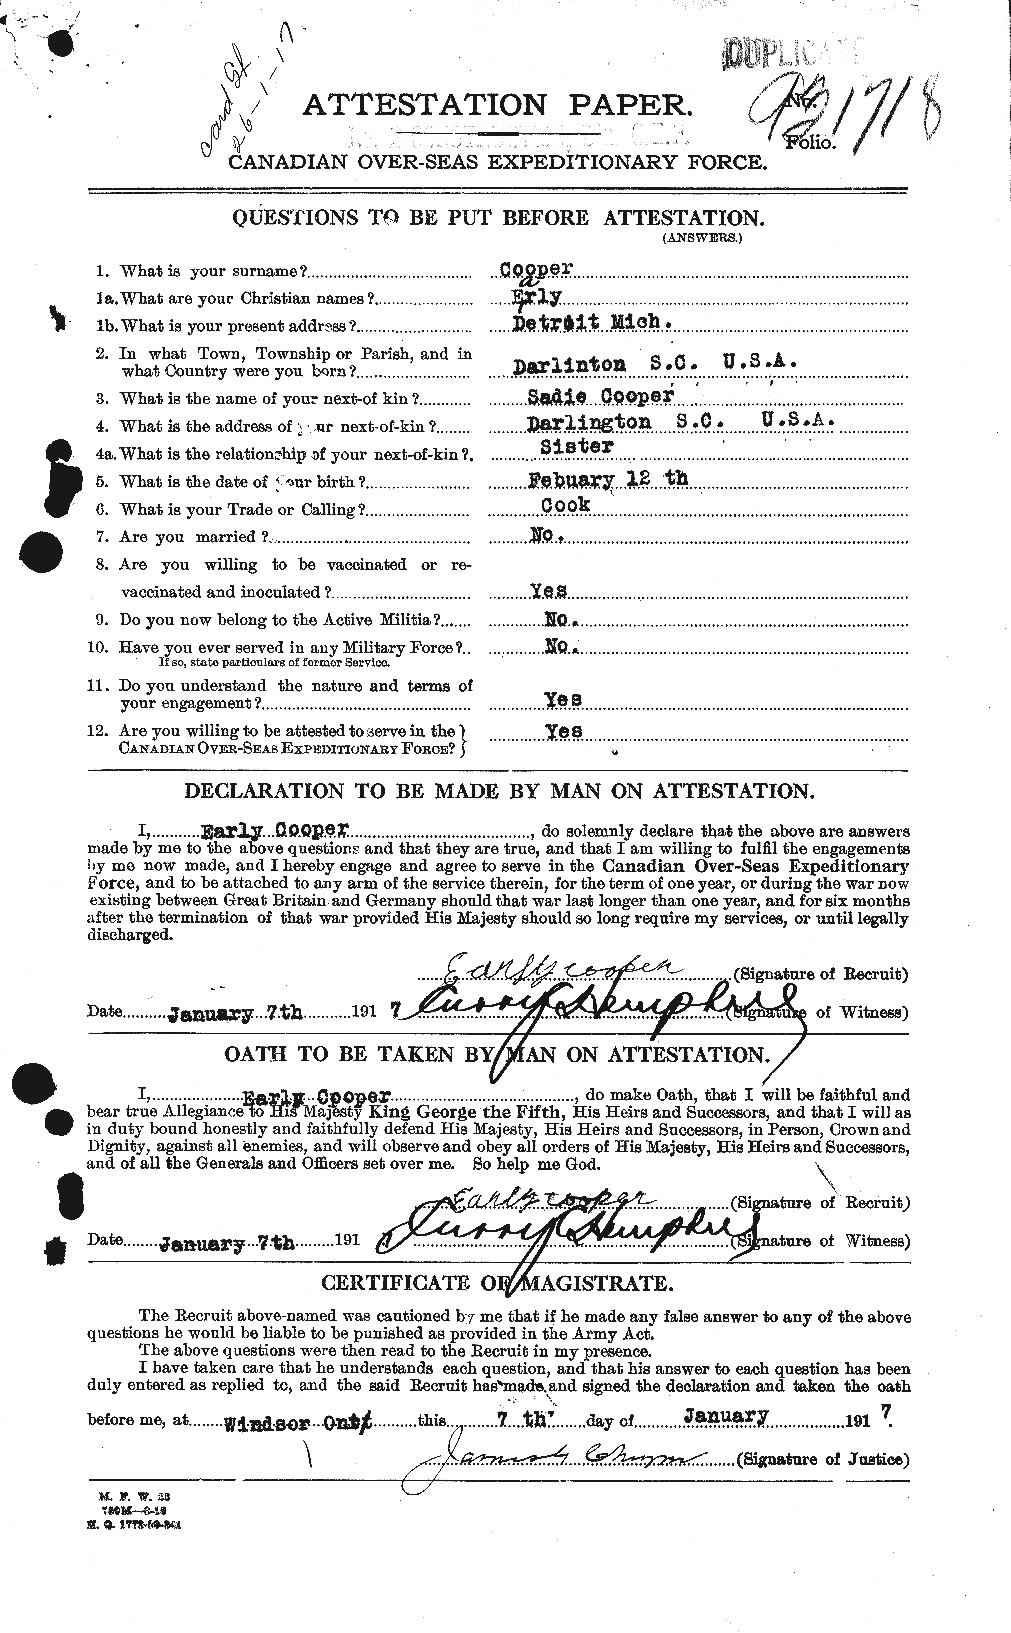 Dossiers du Personnel de la Première Guerre mondiale - CEC 058516a